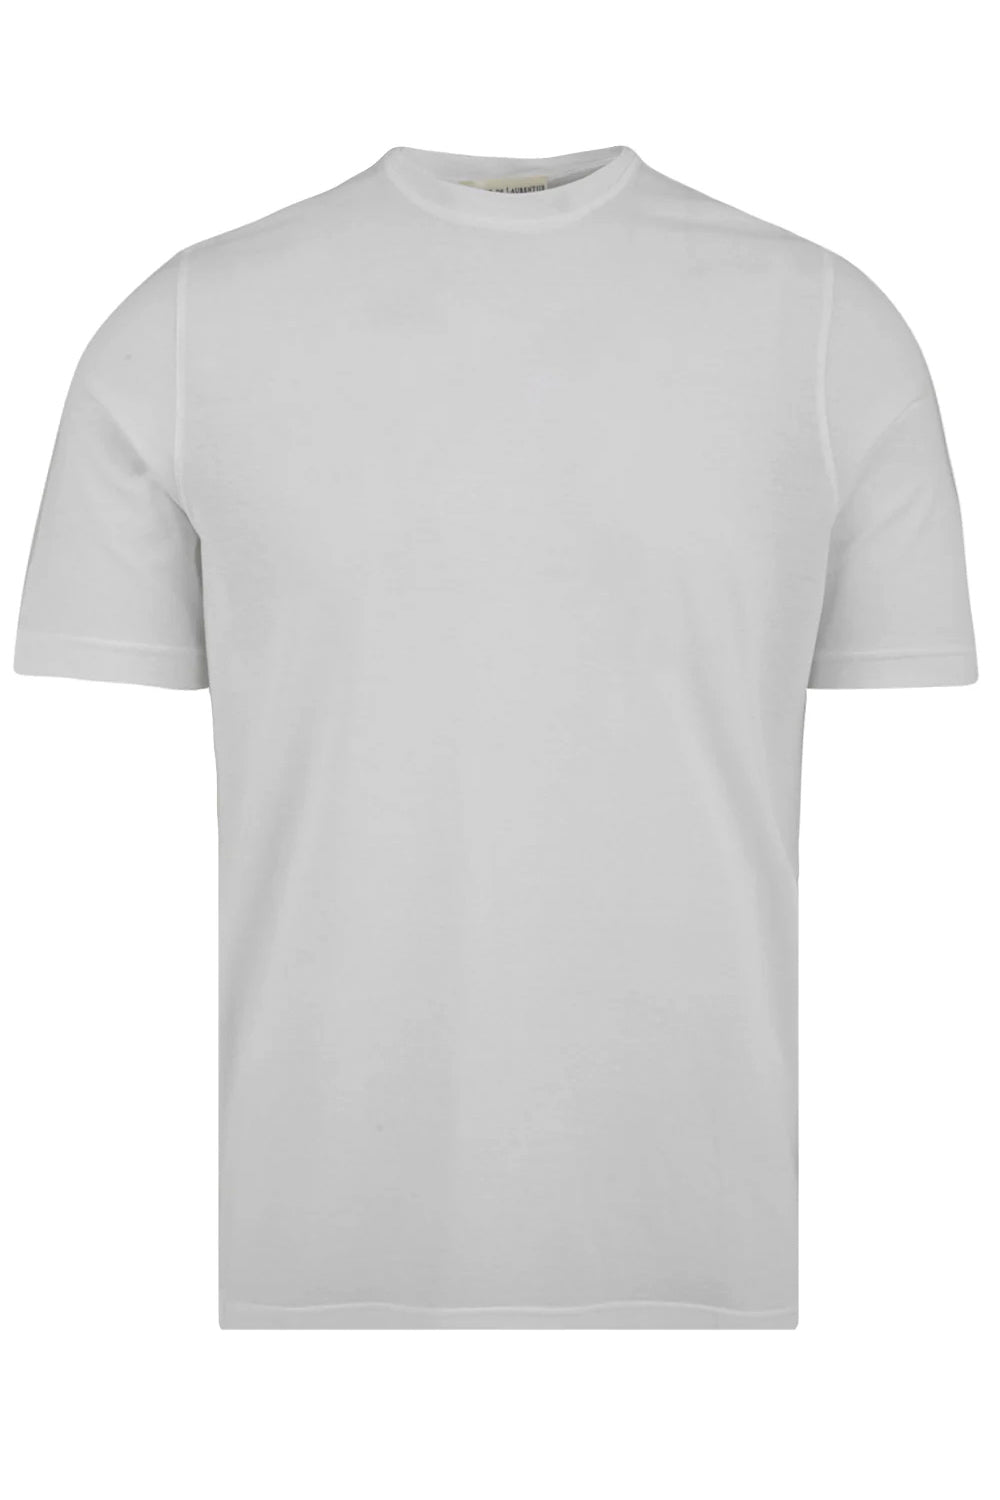 Image of FILIPPO DE LAURENTIIS T-shirt crepe in jersey